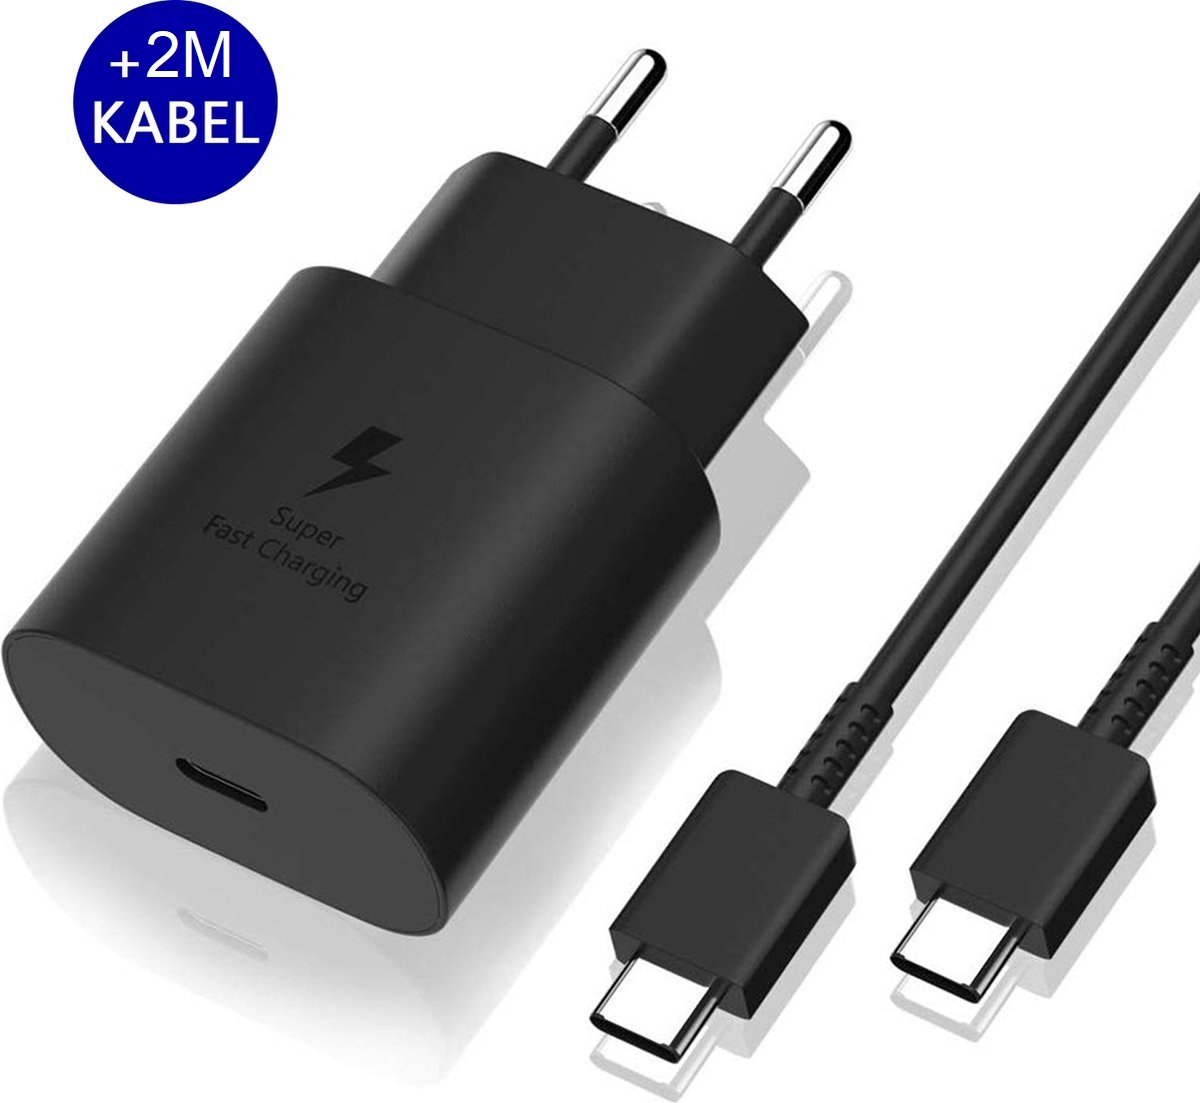 Calle Ocho® Voor Samsung universele snellader met 2m kabel - 25W - USB-C aansluiting - Zwart